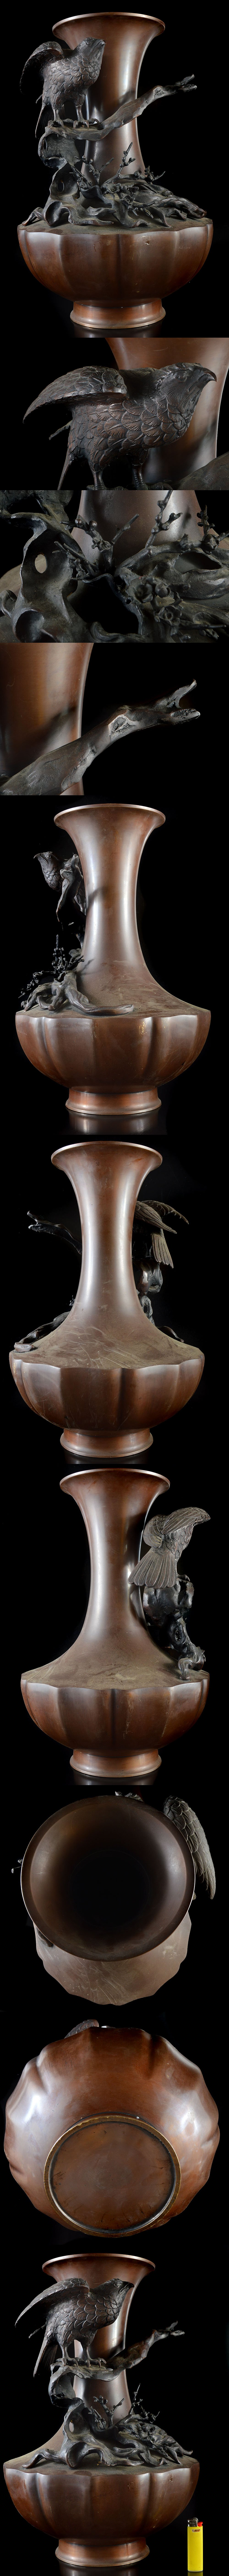 新規購入某有名資産家収蔵品 金工師 古銅 花鳥細密彫刻花瓶 飾壺 高さ45cm 古美術品(旧家蔵出)A1220 UTDj4ys8 花器